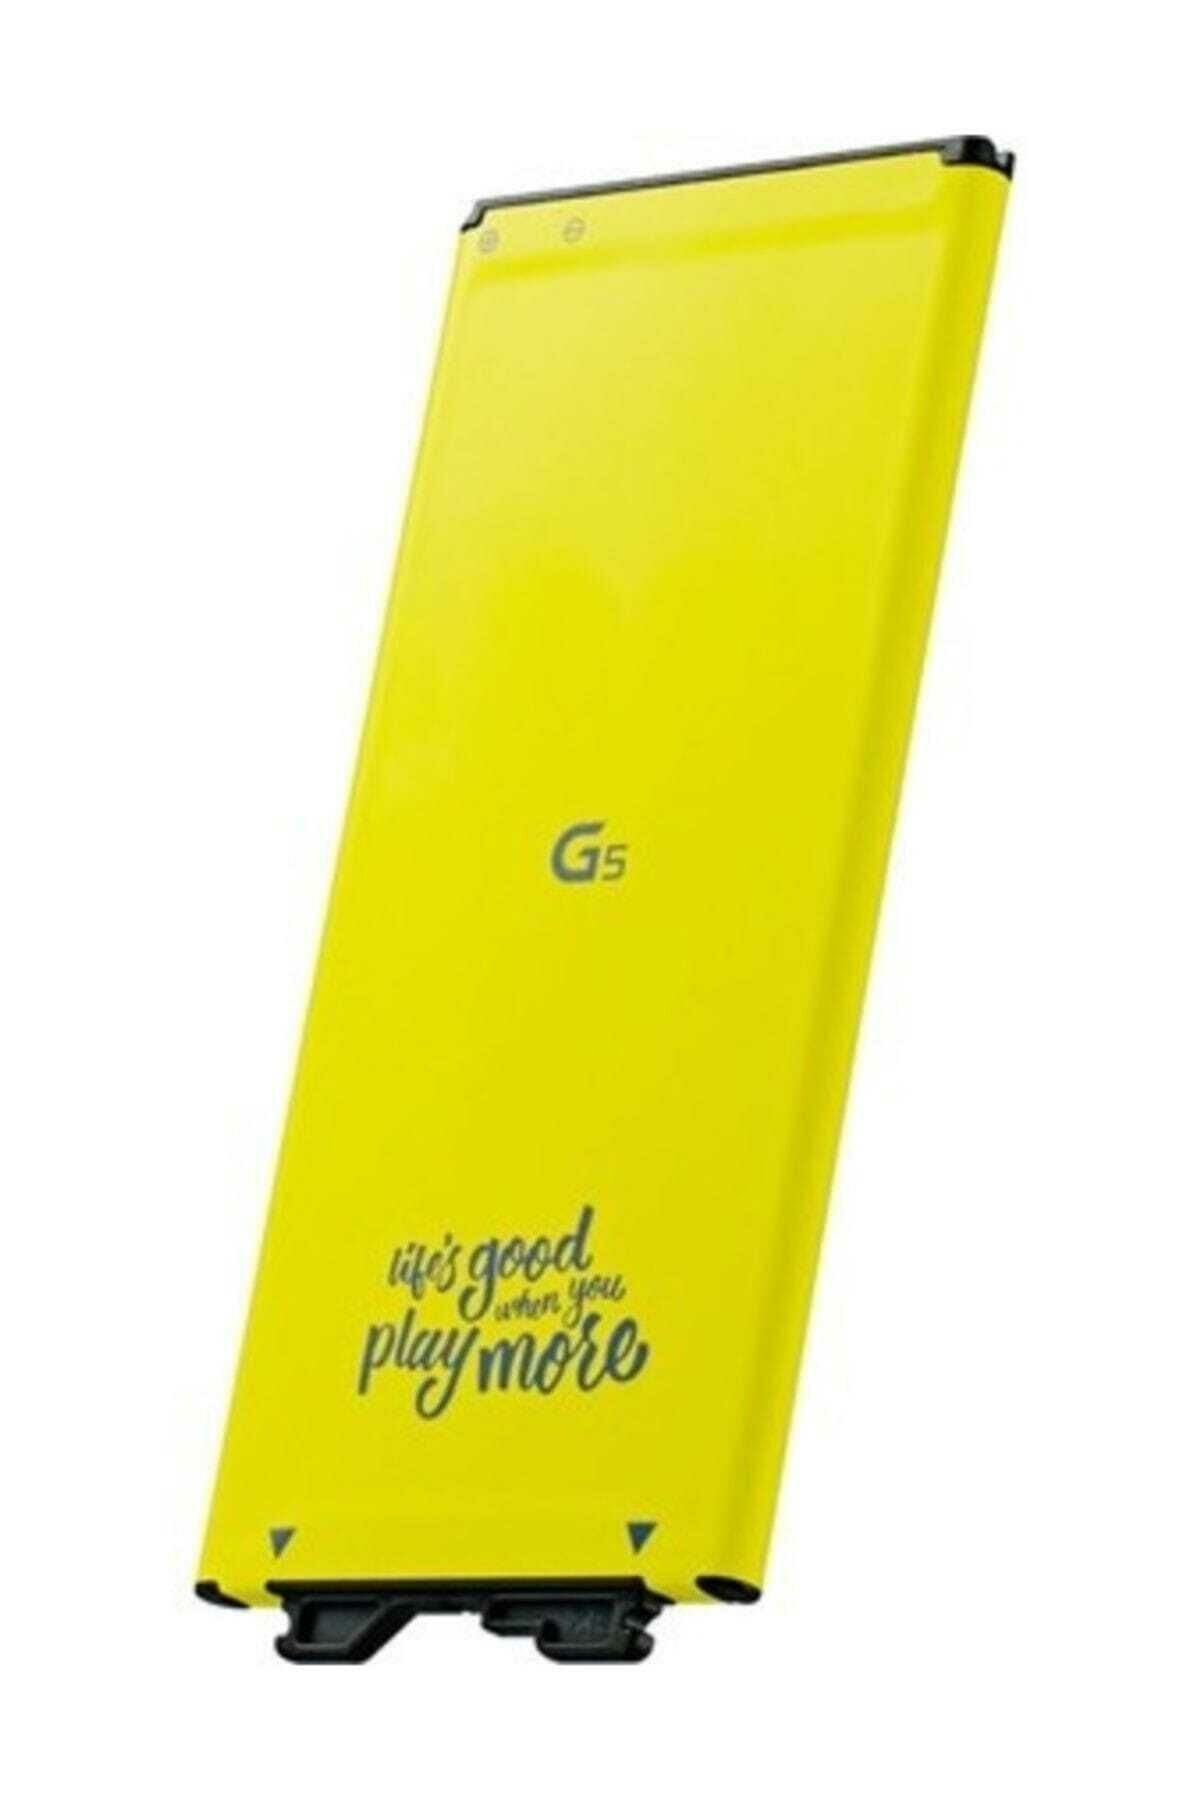 CEP TEL BATARYA LG G5